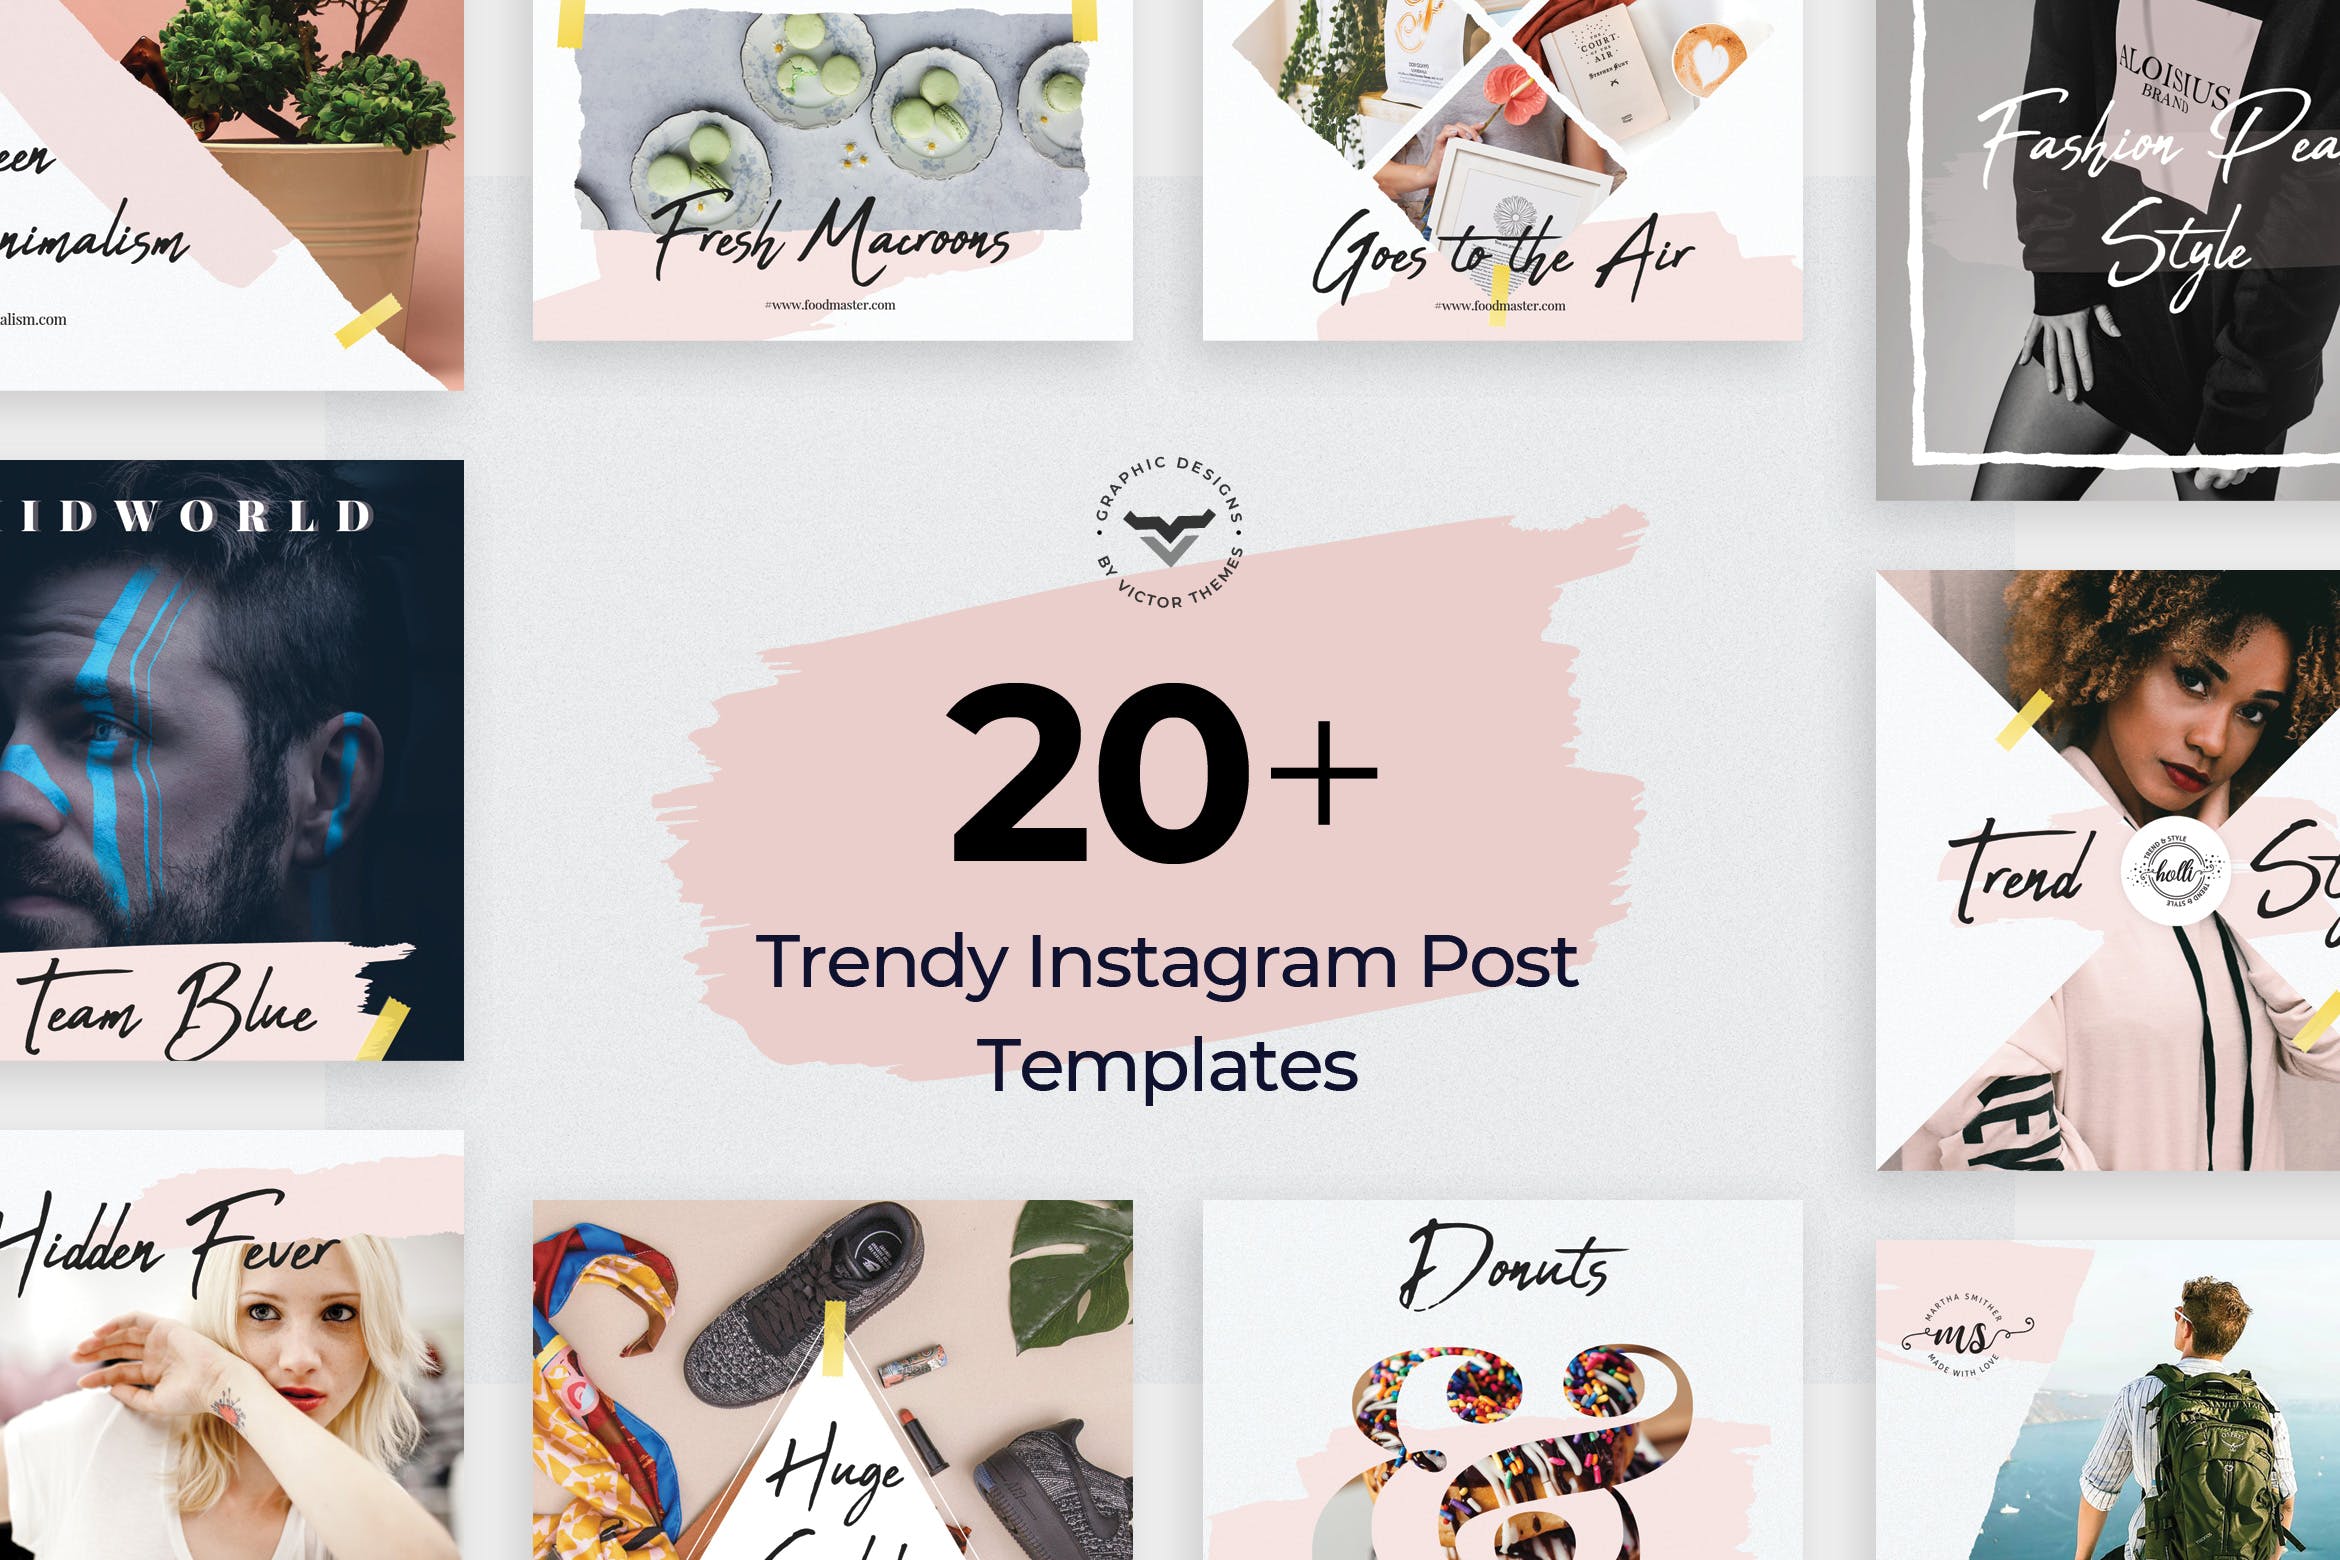 20+创意便利贴设计风格Instagram社交贴图模板第一素材精选 Instagram Post Templates插图